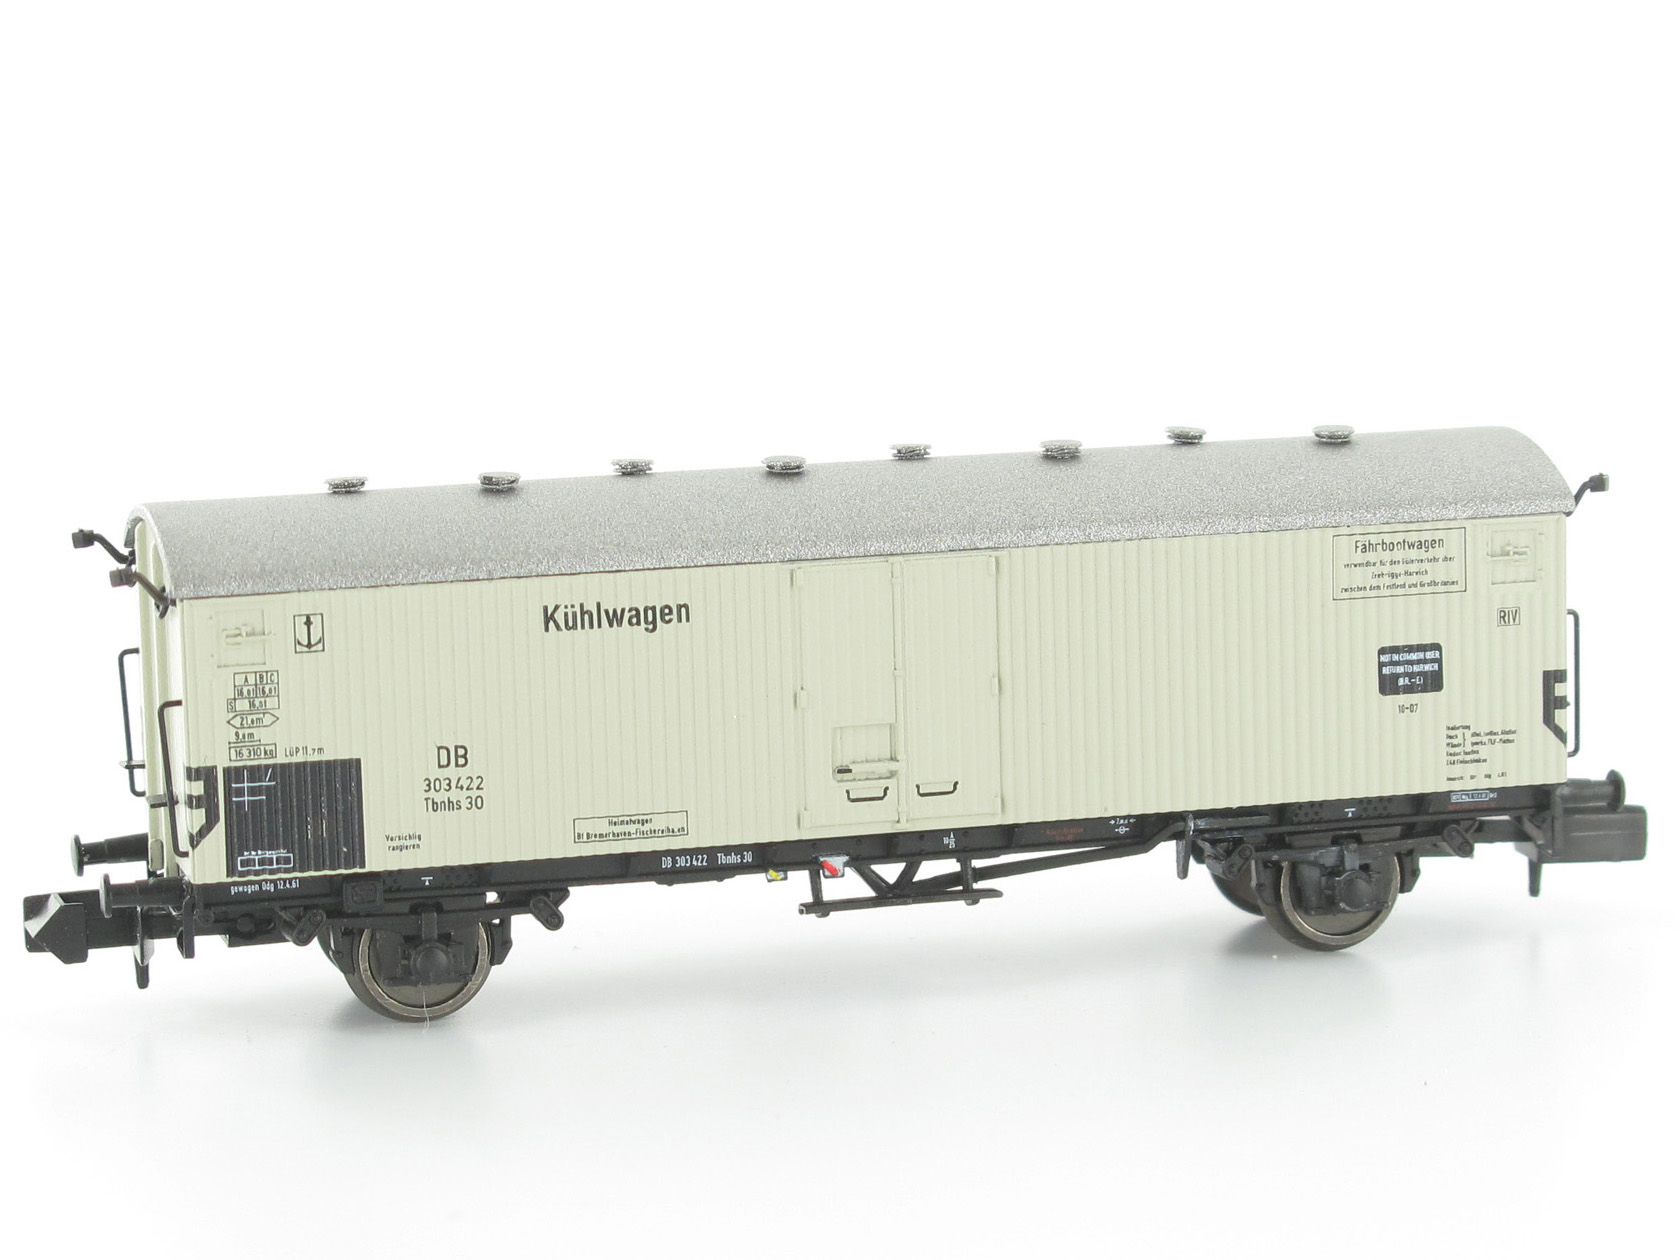 N Scale - Modellbahn Union - MU_N-G56003 - Tbnhs Refrigerated ferry wagon - Deutsche Bundesbahn - 303 422